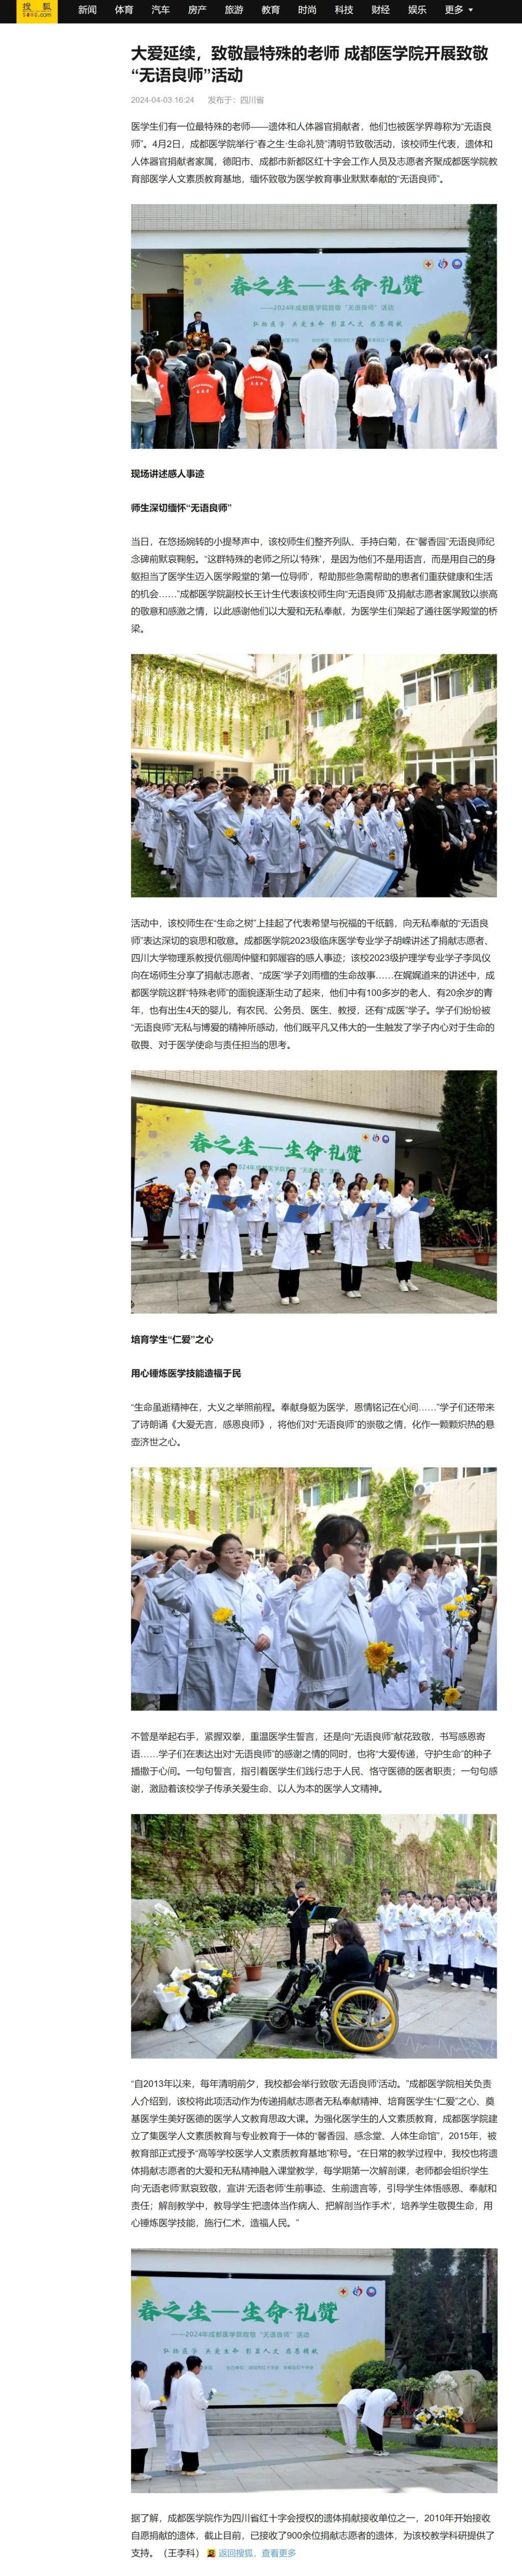 搜狐网大爱延续致敬最特殊的老师成都医学院开展致敬无语良师活动